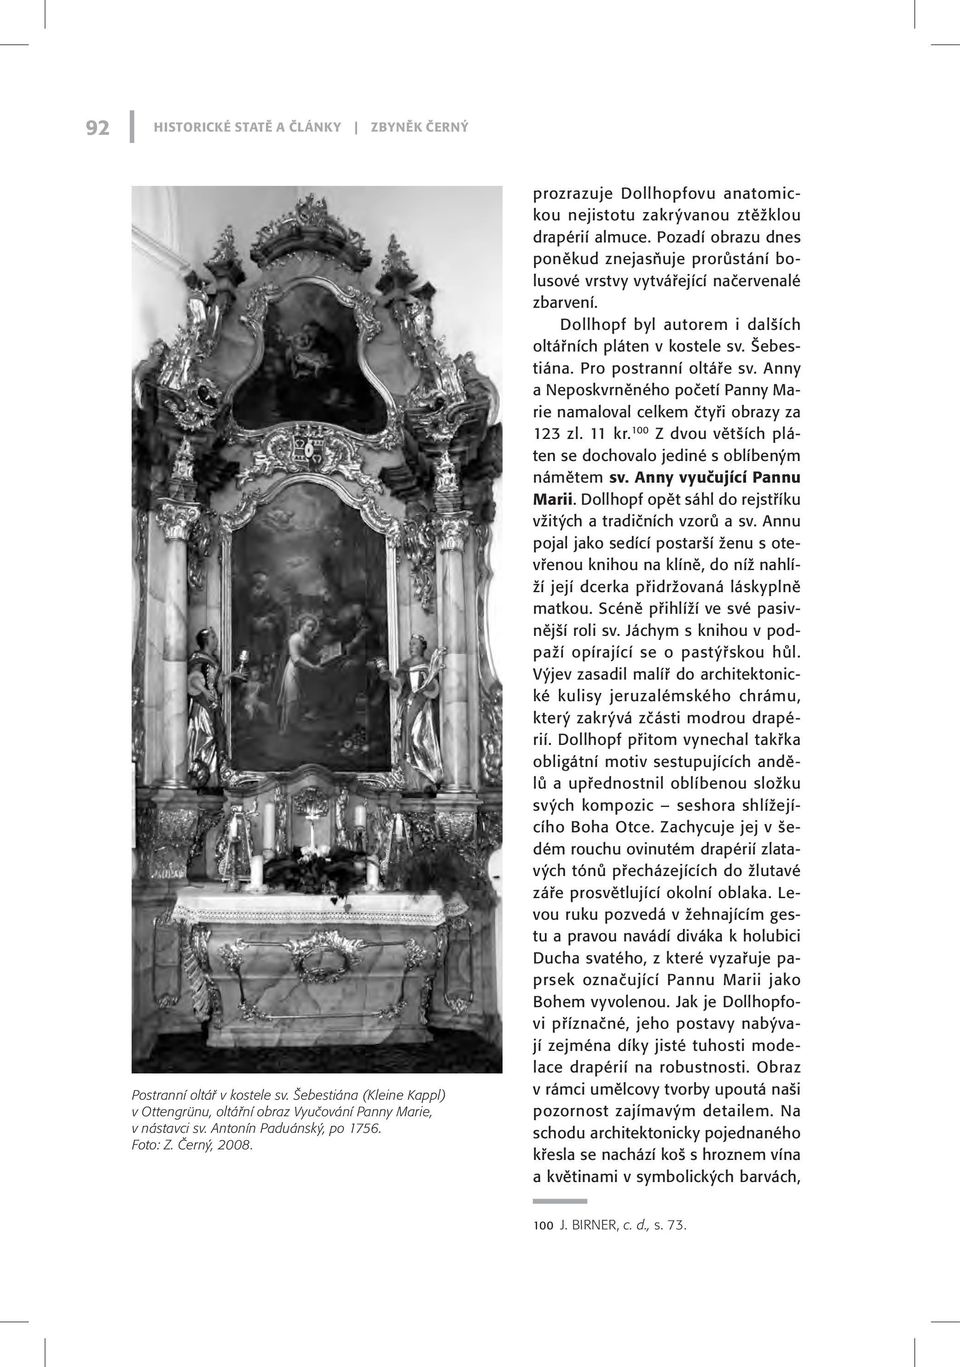 Dollhopf byl autorem i dalších oltářních pláten v kostele sv. Šebestiána. Pro postranní oltáře sv. Anny a Neposkvrněného početí Panny Marie namaloval celkem čtyři obrazy za 123 zl. 11 kr.